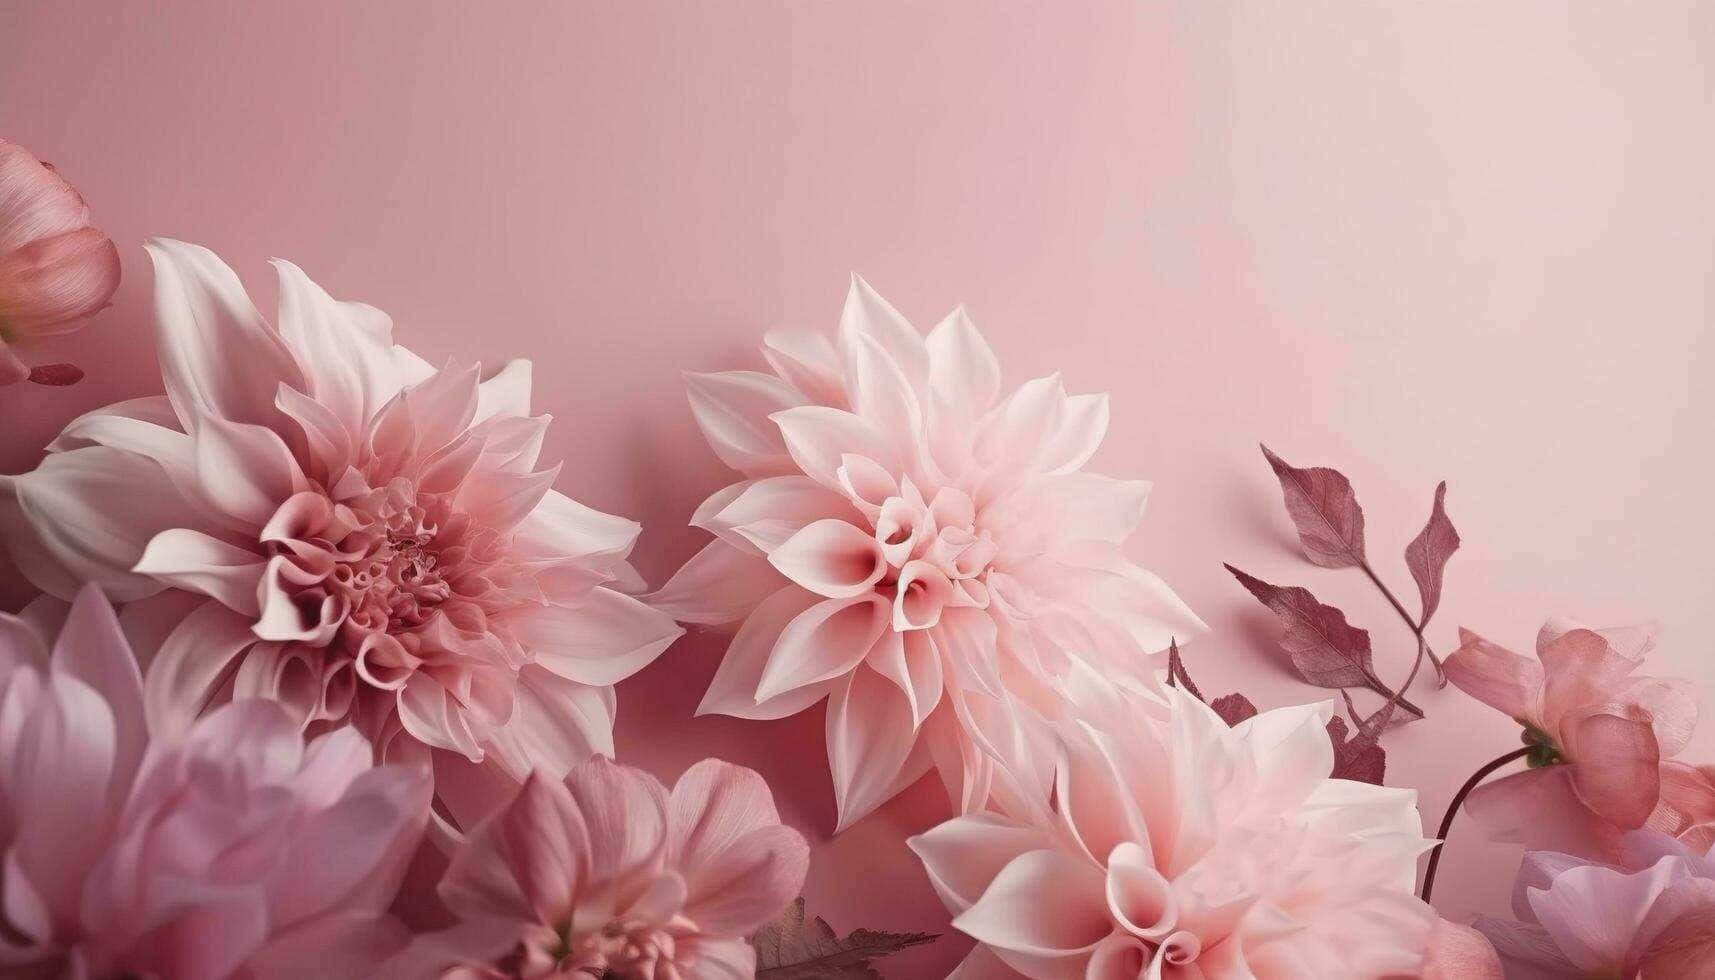 Pale Pink Dahlia Floral Arrangement Wallpaper